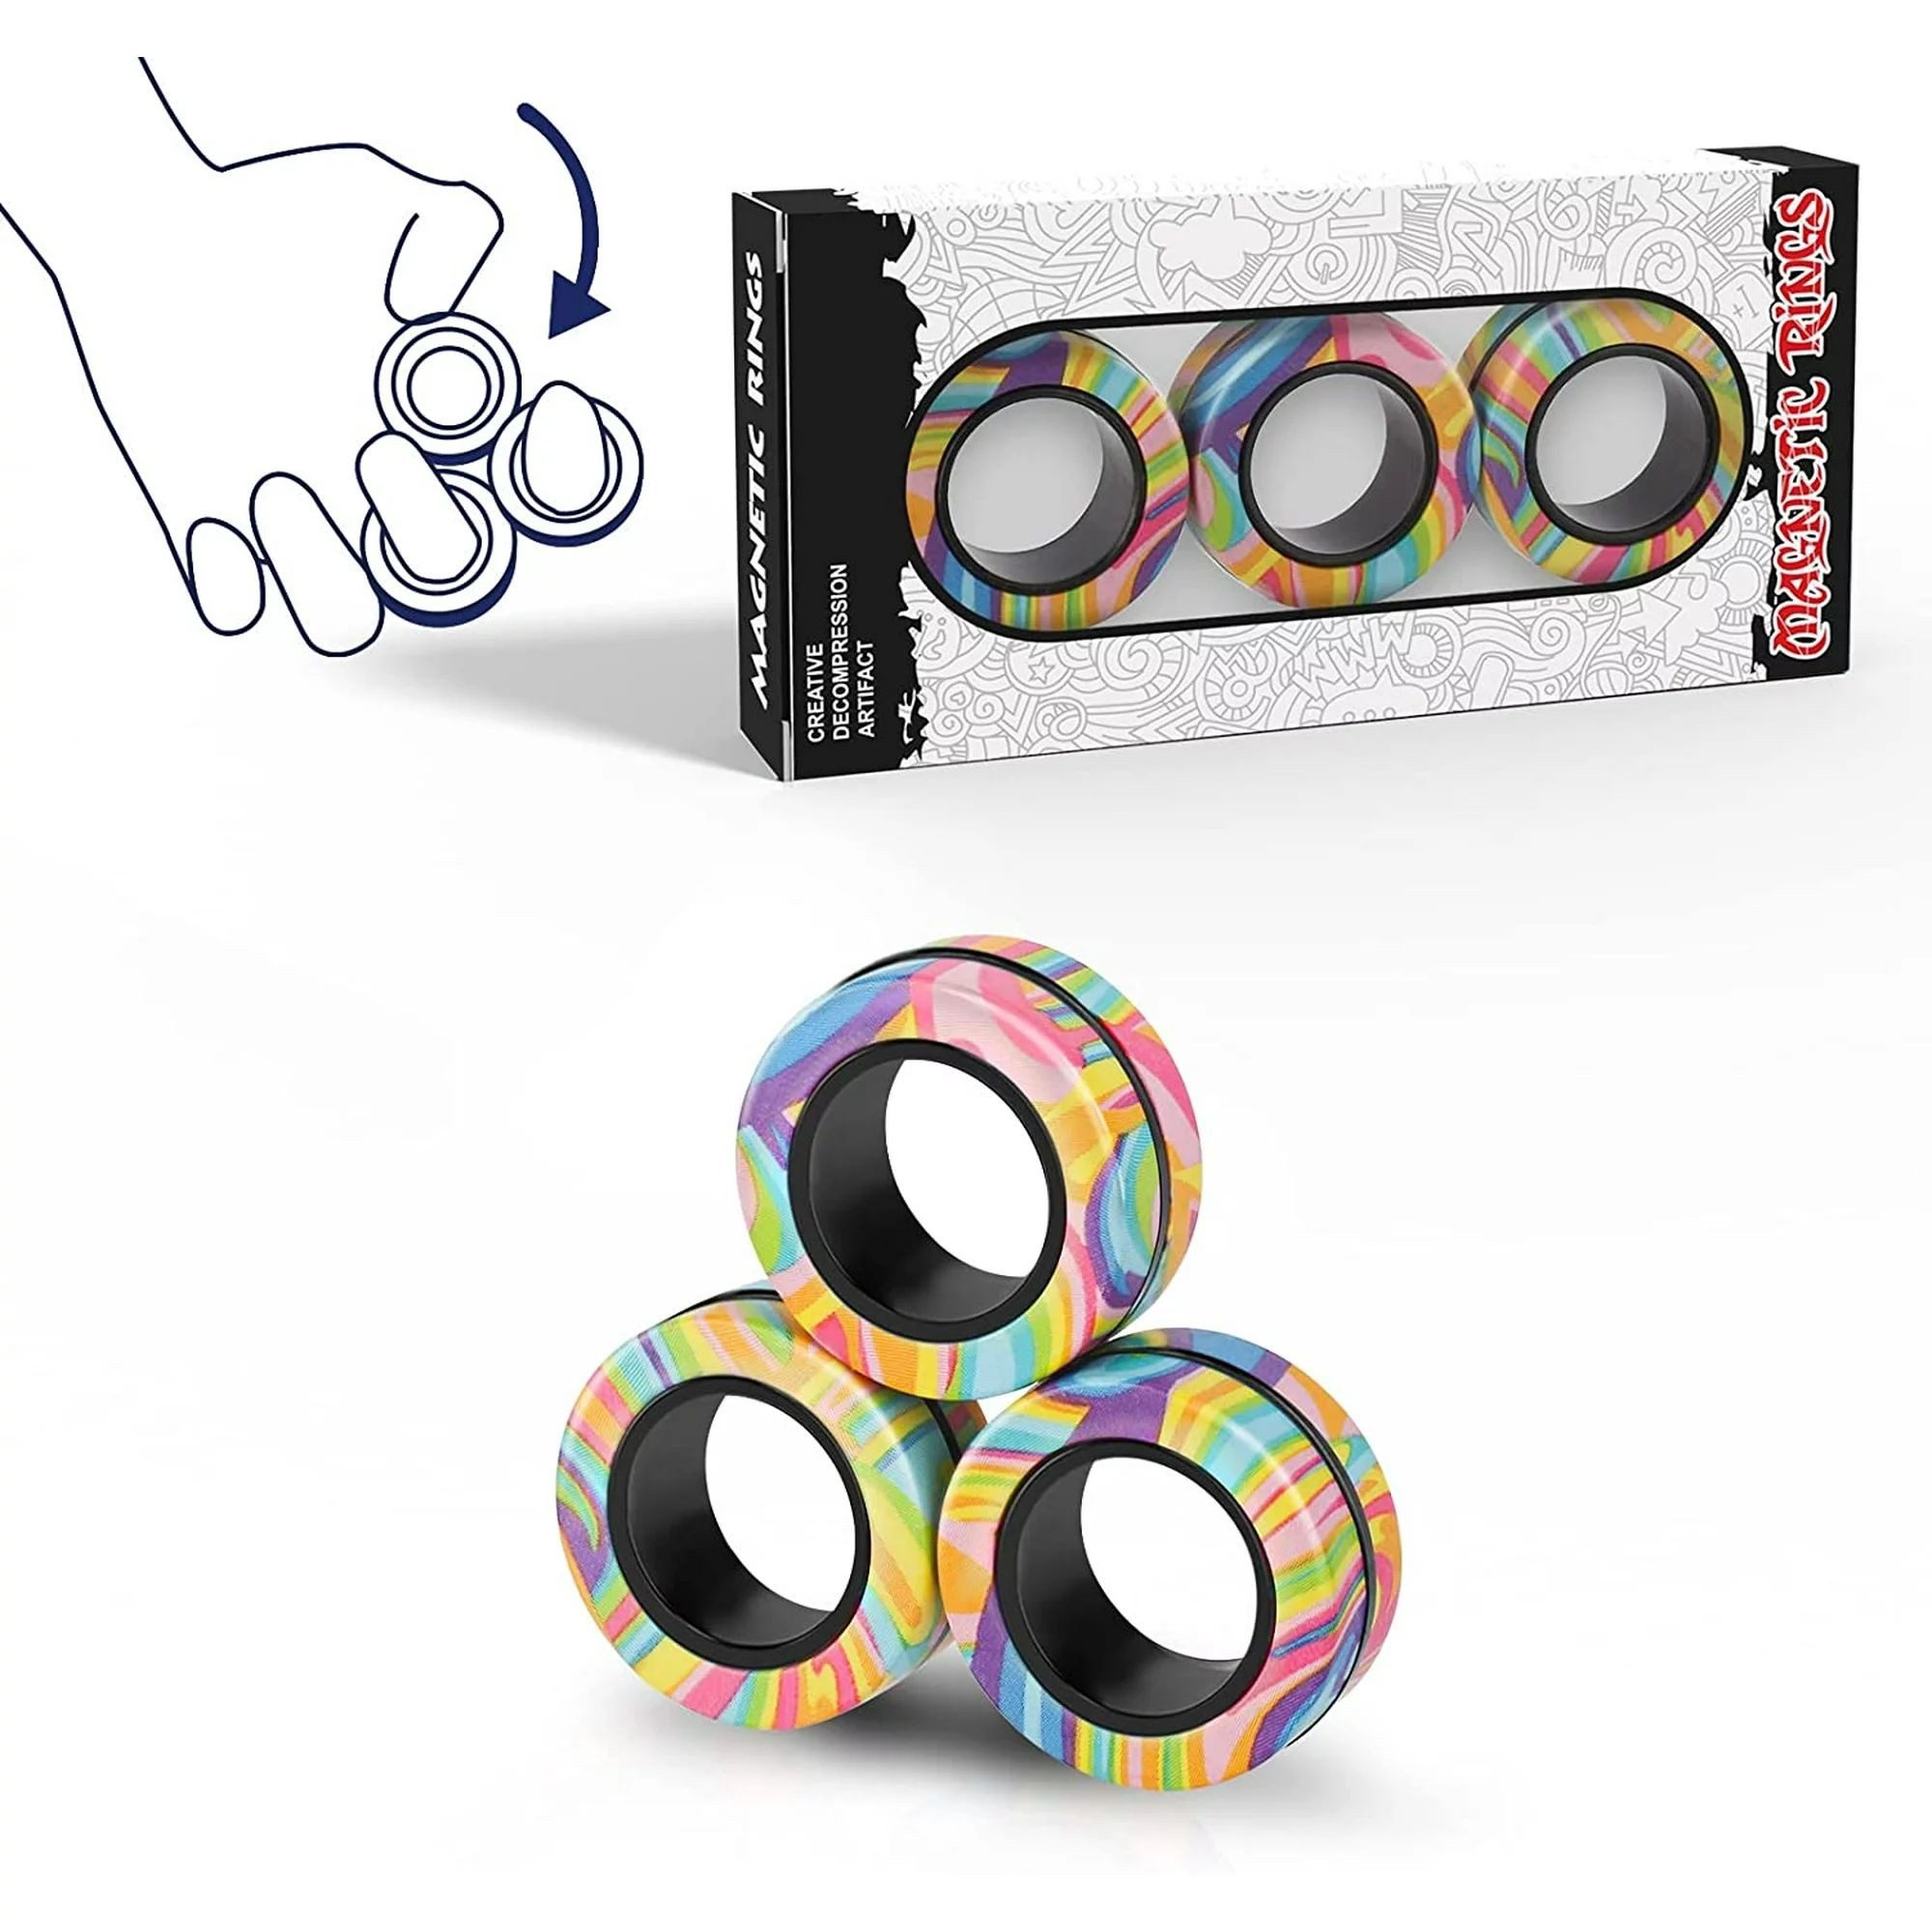 Fivejoy Fidget Spinner Magnetische Ringe Fidget Spielzeug Set, Idee ADHD Fidget Spielzeug, Fidget Magnete Spinner Ringe für Angst Relief Therapie